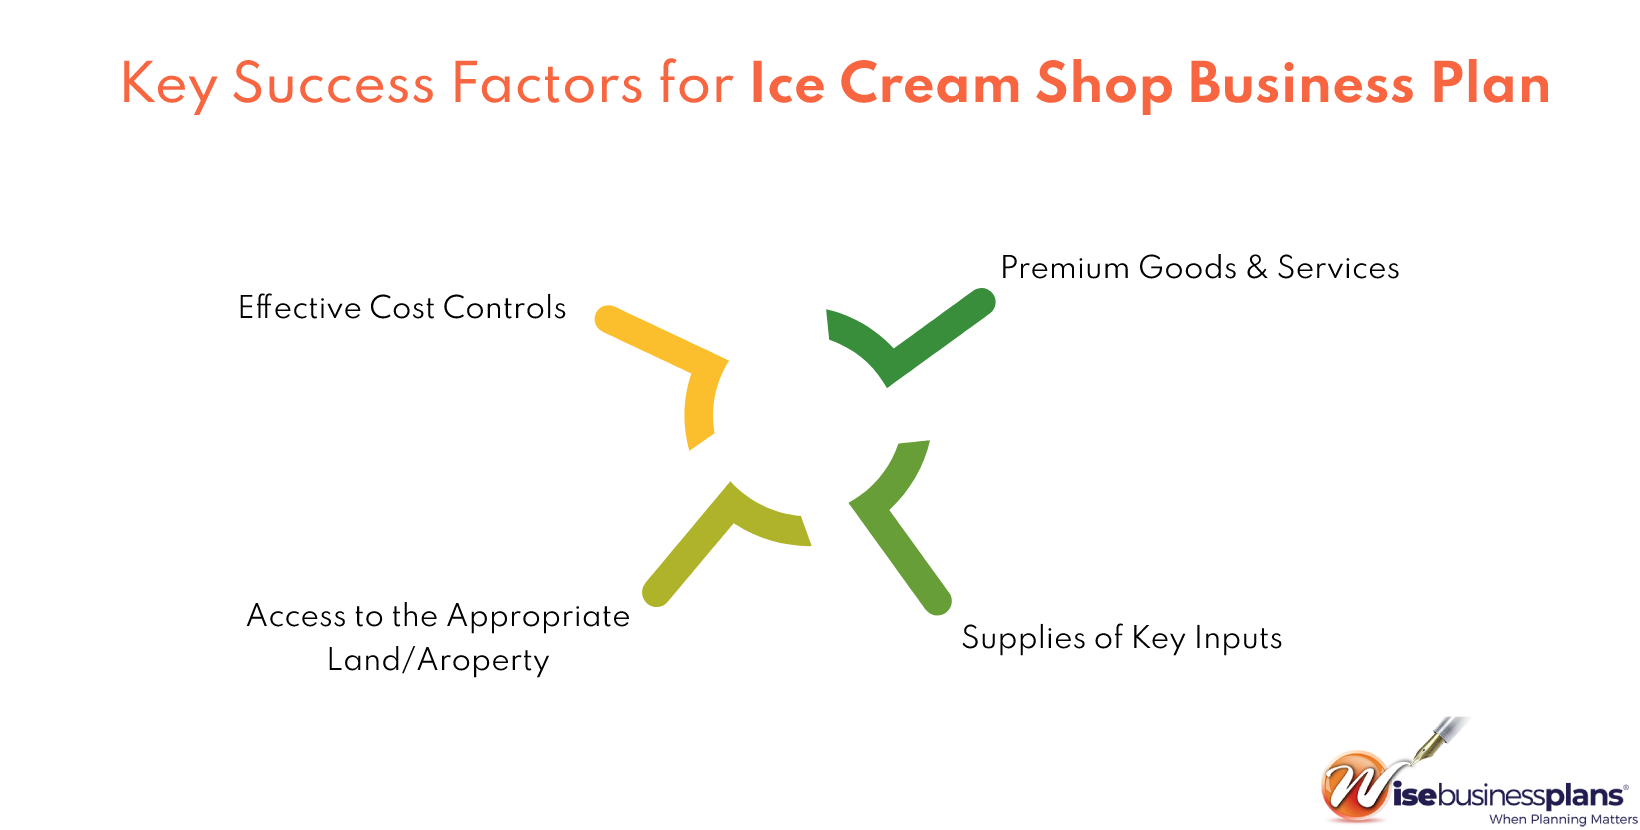 Key Success Factors For Ice Cream Shop Business Plan